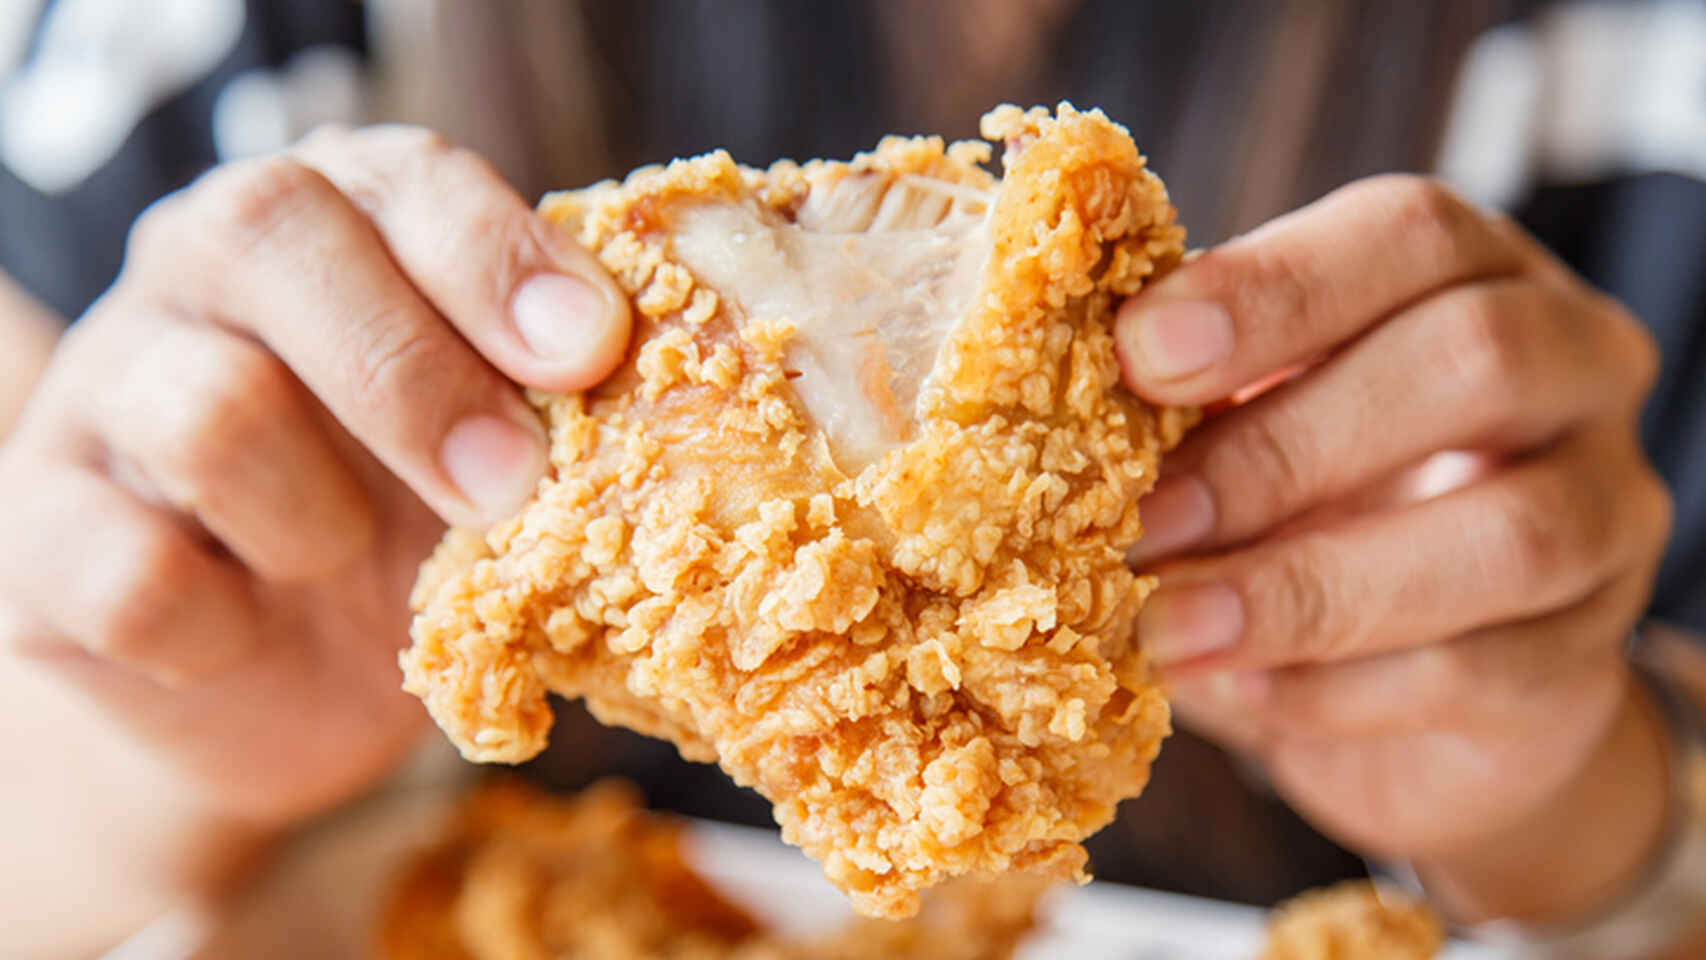 Cómo preparar pollo KFC con la receta original? - Infobae